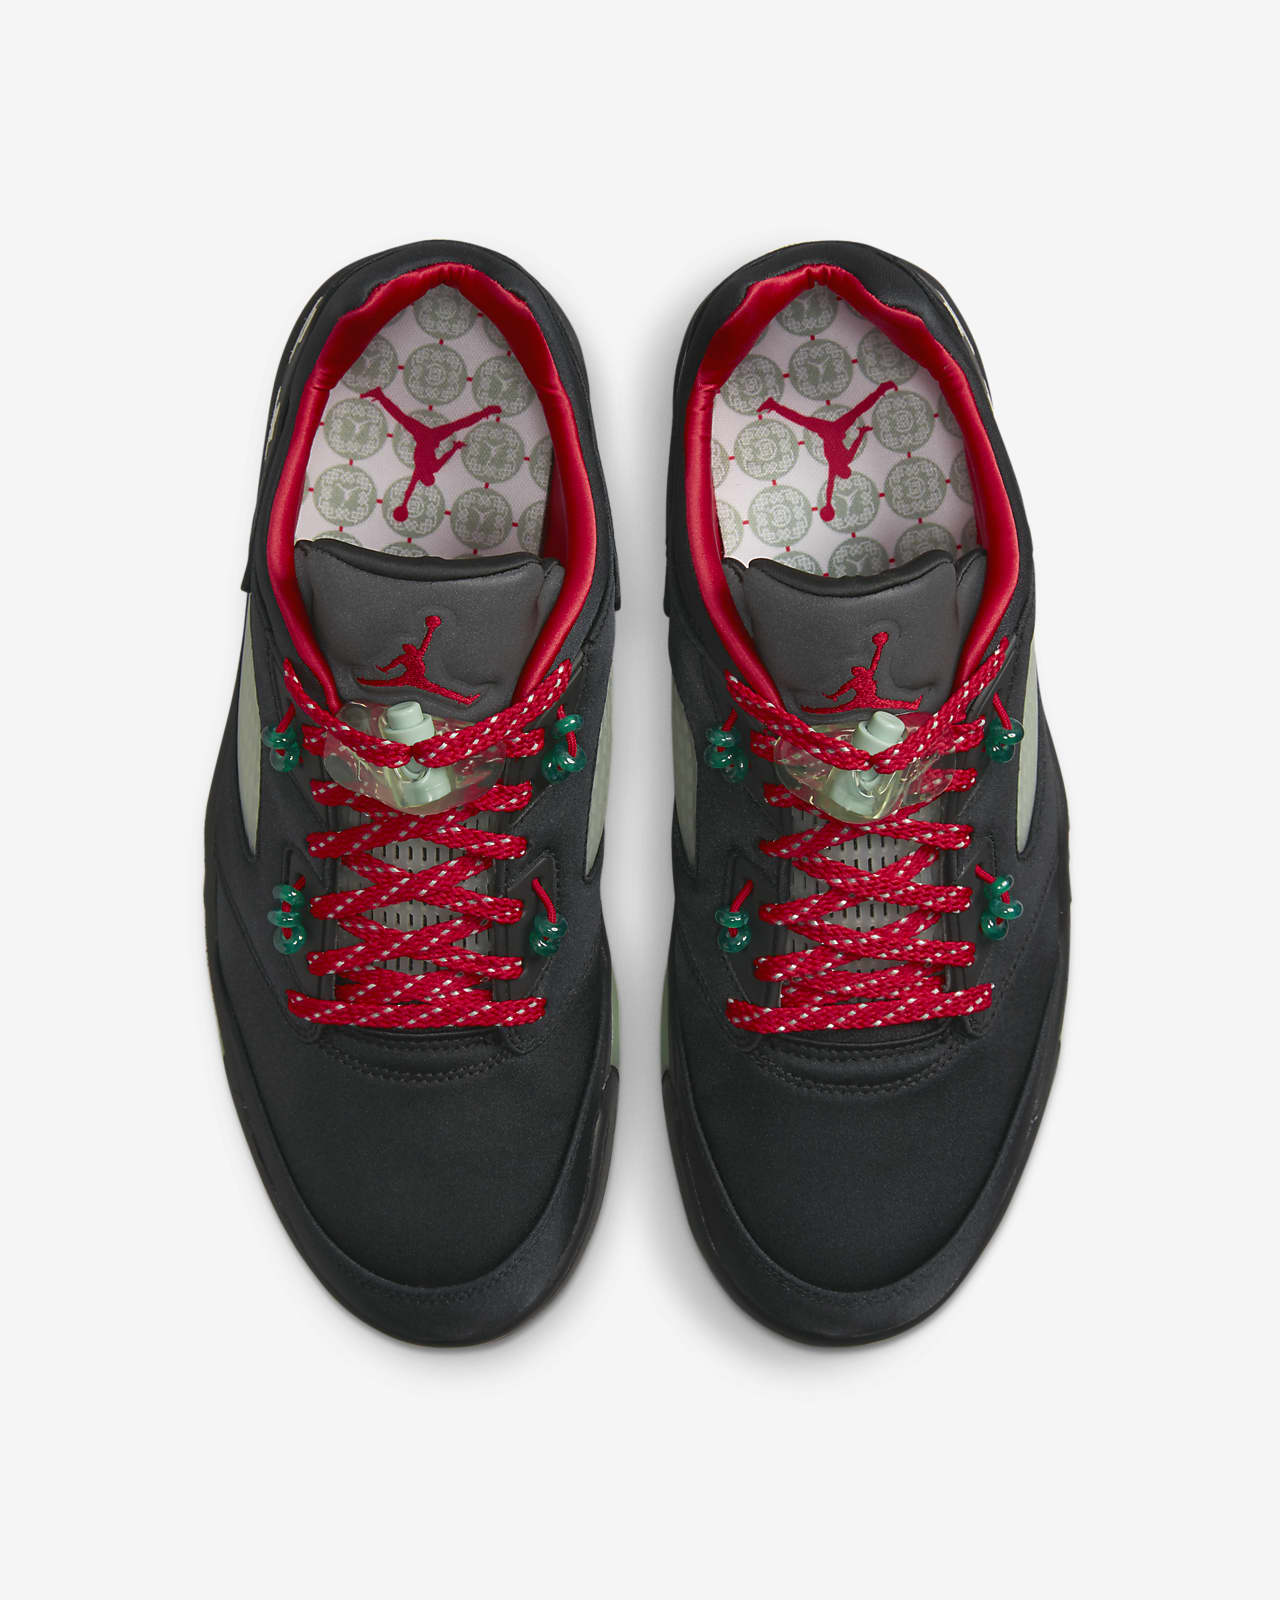 Air Jordan 5 men's nike air jordan v shoes Retro Low SP Shoes